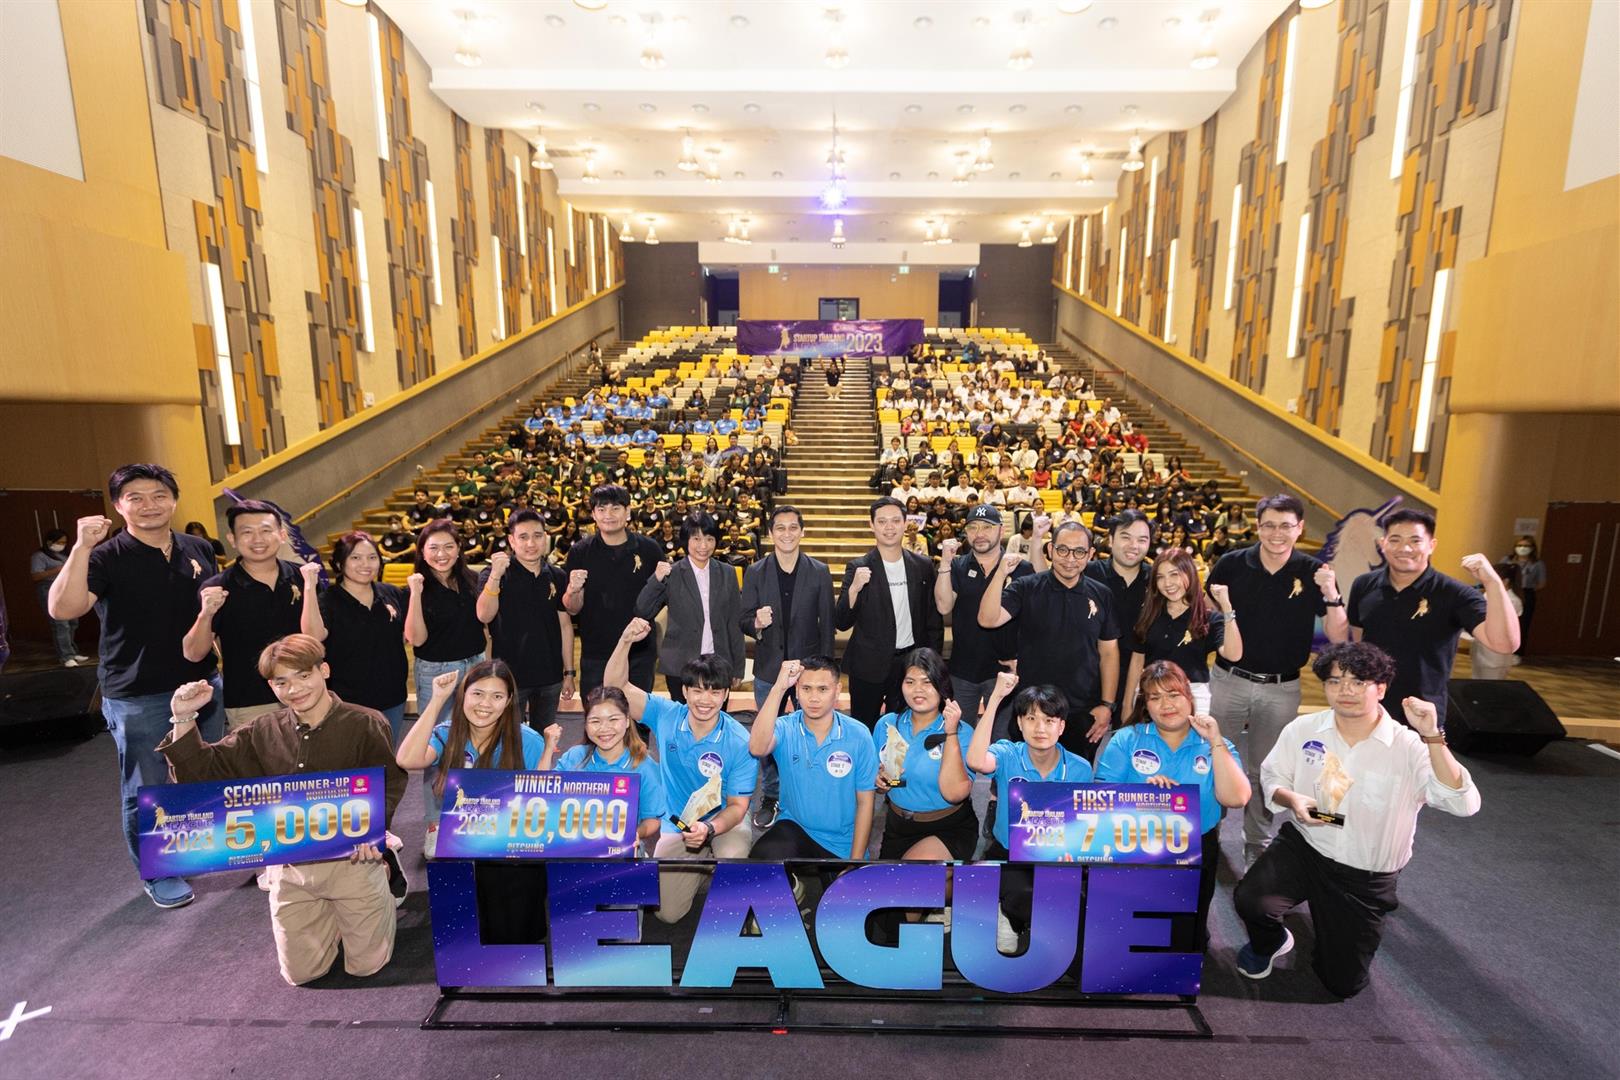 สุดยอดนิสิต BCA ม.พะเยา คว้ารางวัลชนะเลิศอันดับที่ 1 และอันดับที่ 2 มาครอง บนเวทีการแข่งขัน Startup Thailand League 2023 ระดับภูมิภาค (ภาคเหนือ)